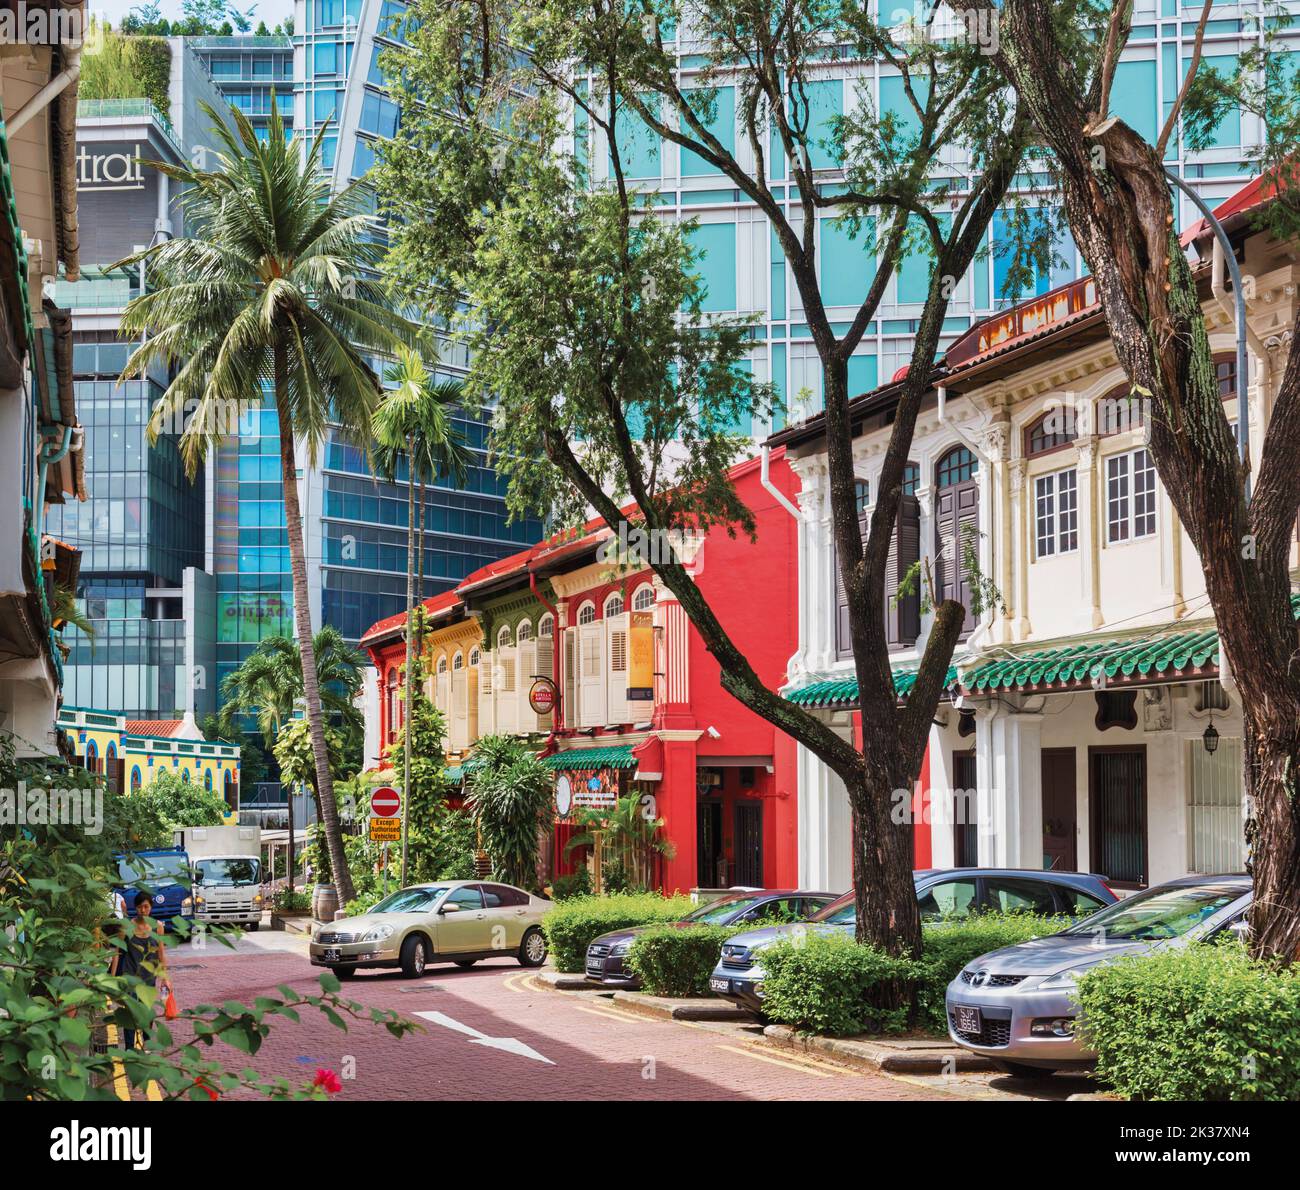 Propriétés dans Emerald Hill Road, République de Singapour. Emerald Hill se trouve à proximité d'Orchard Road, l'une des principales artères de Singapour. Il est doté de p Banque D'Images